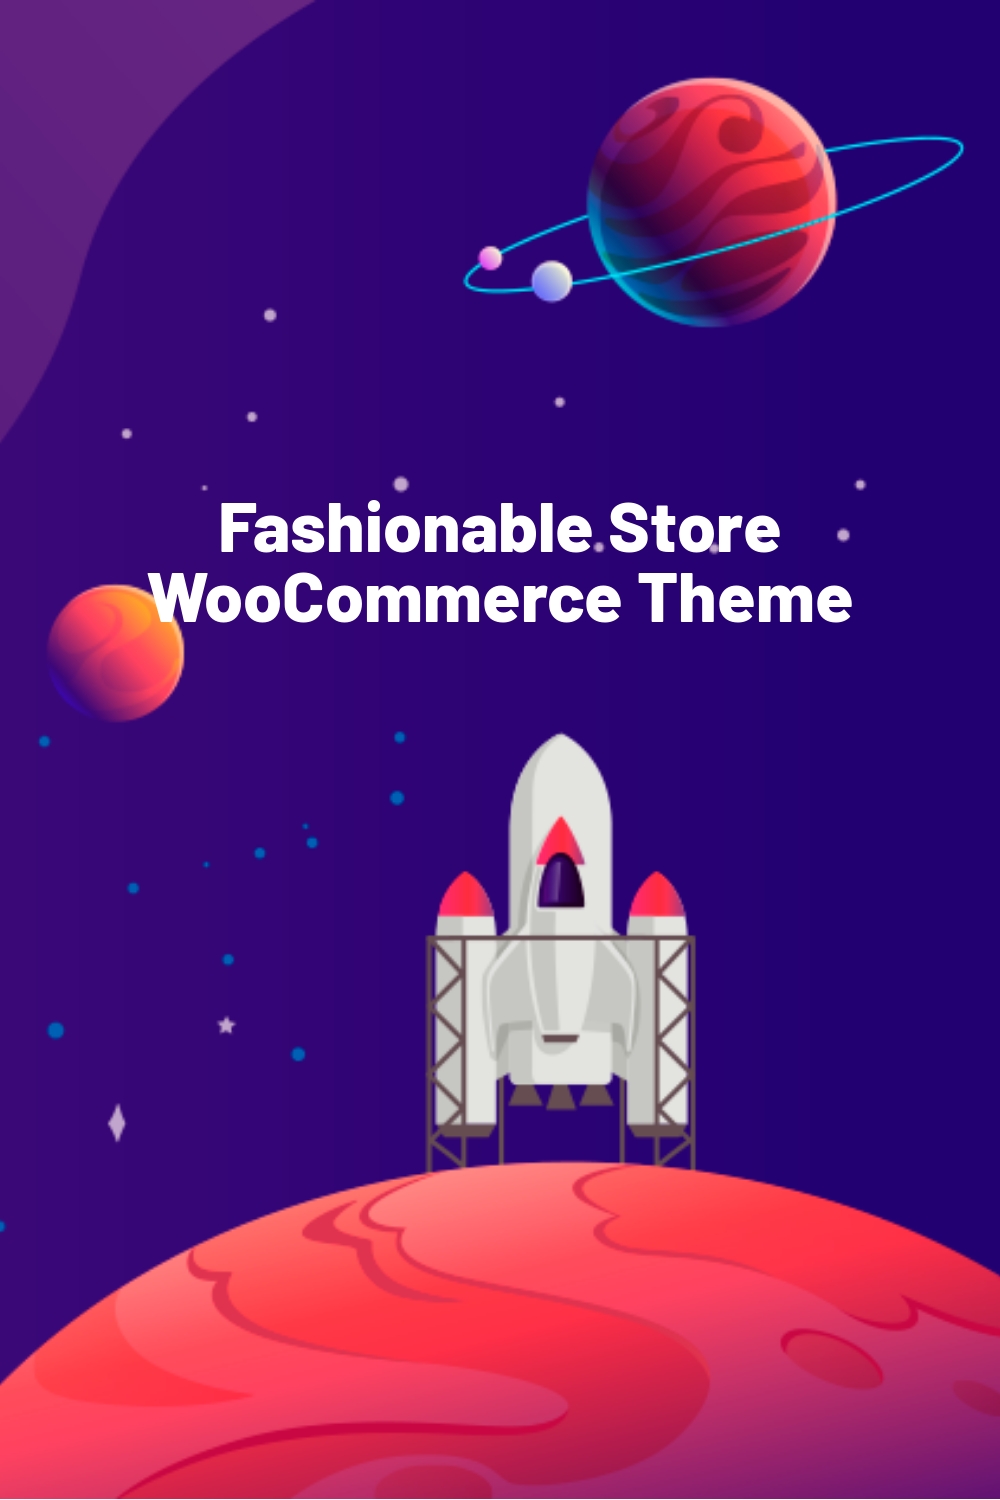 Fashionable Store WooCommerce Theme